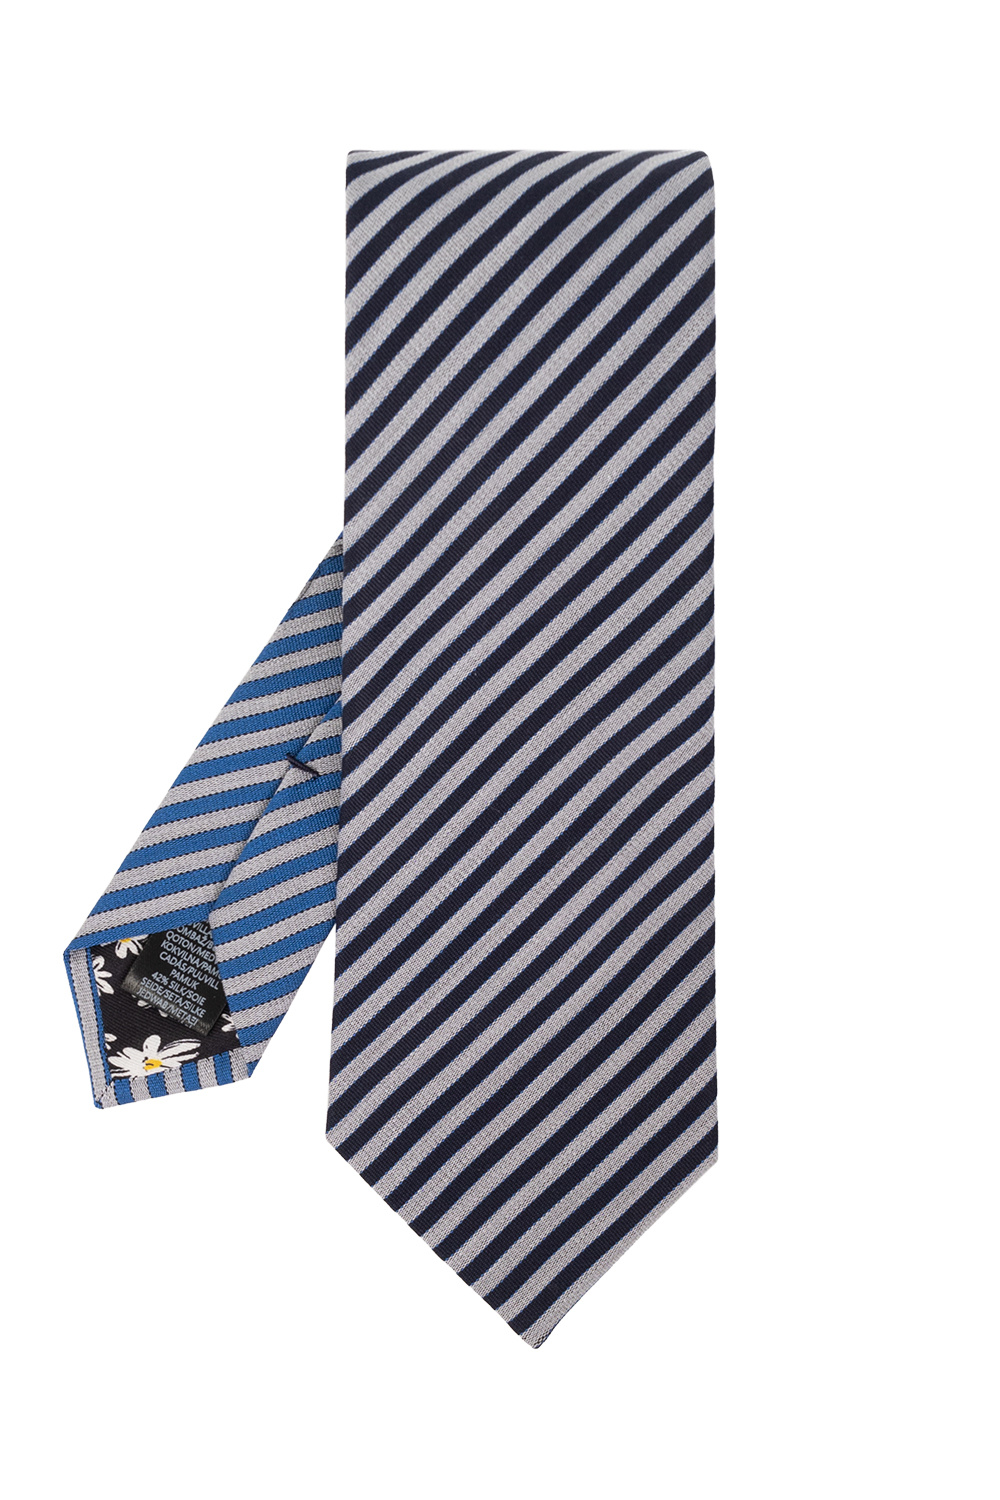 Paul Smith Striped tie